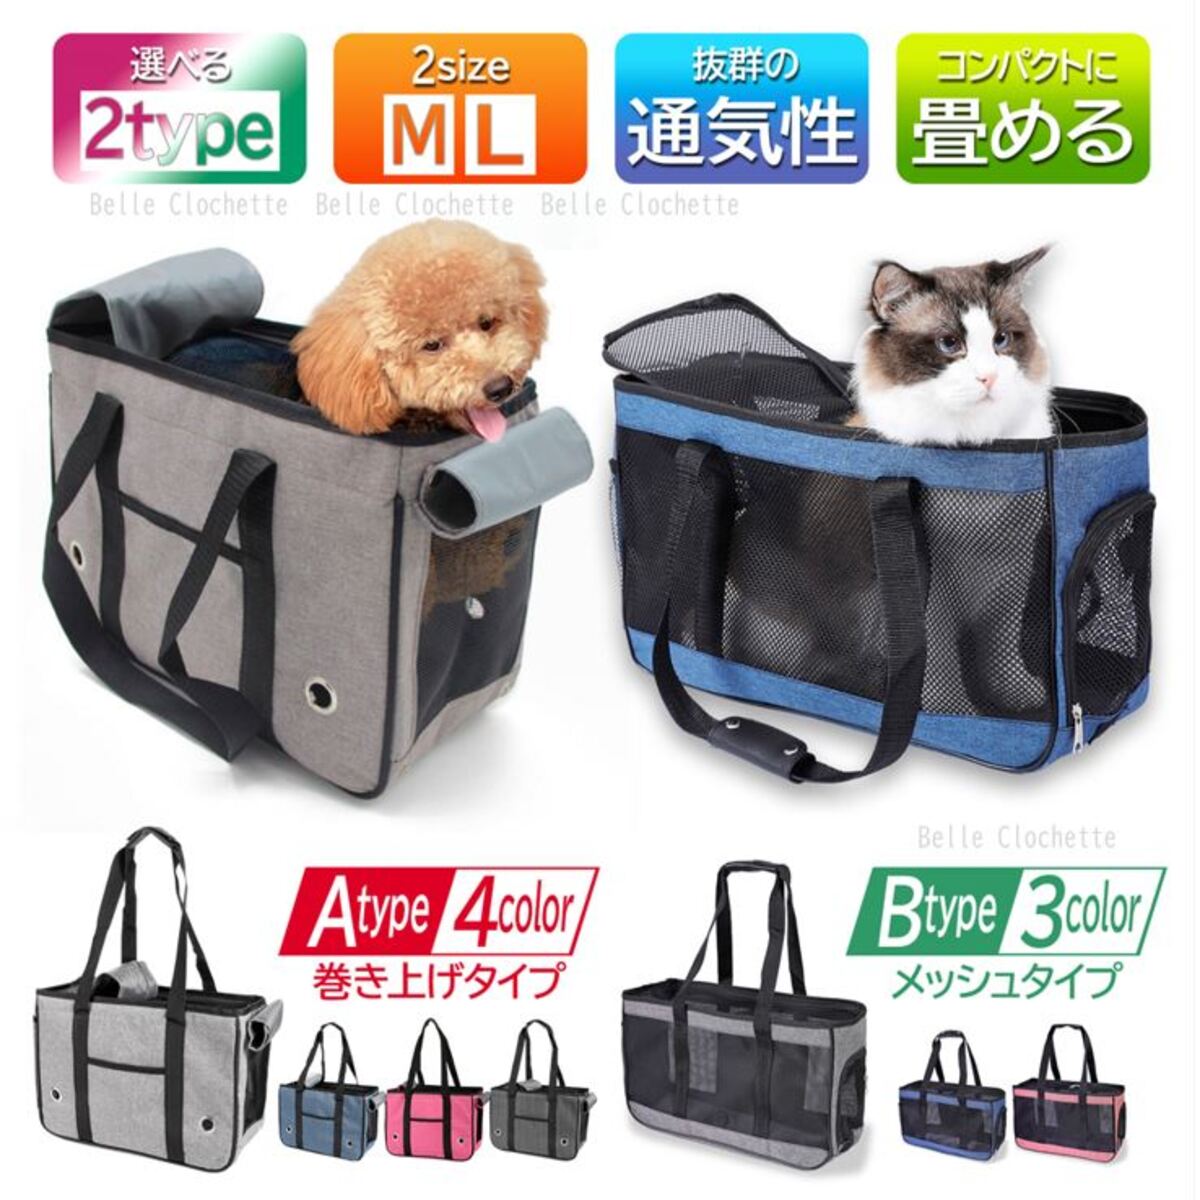  домашнее животное Carry домашнее животное дорожная сумка собака кошка складной домашнее животное маленький размер средний выход модный сетка 